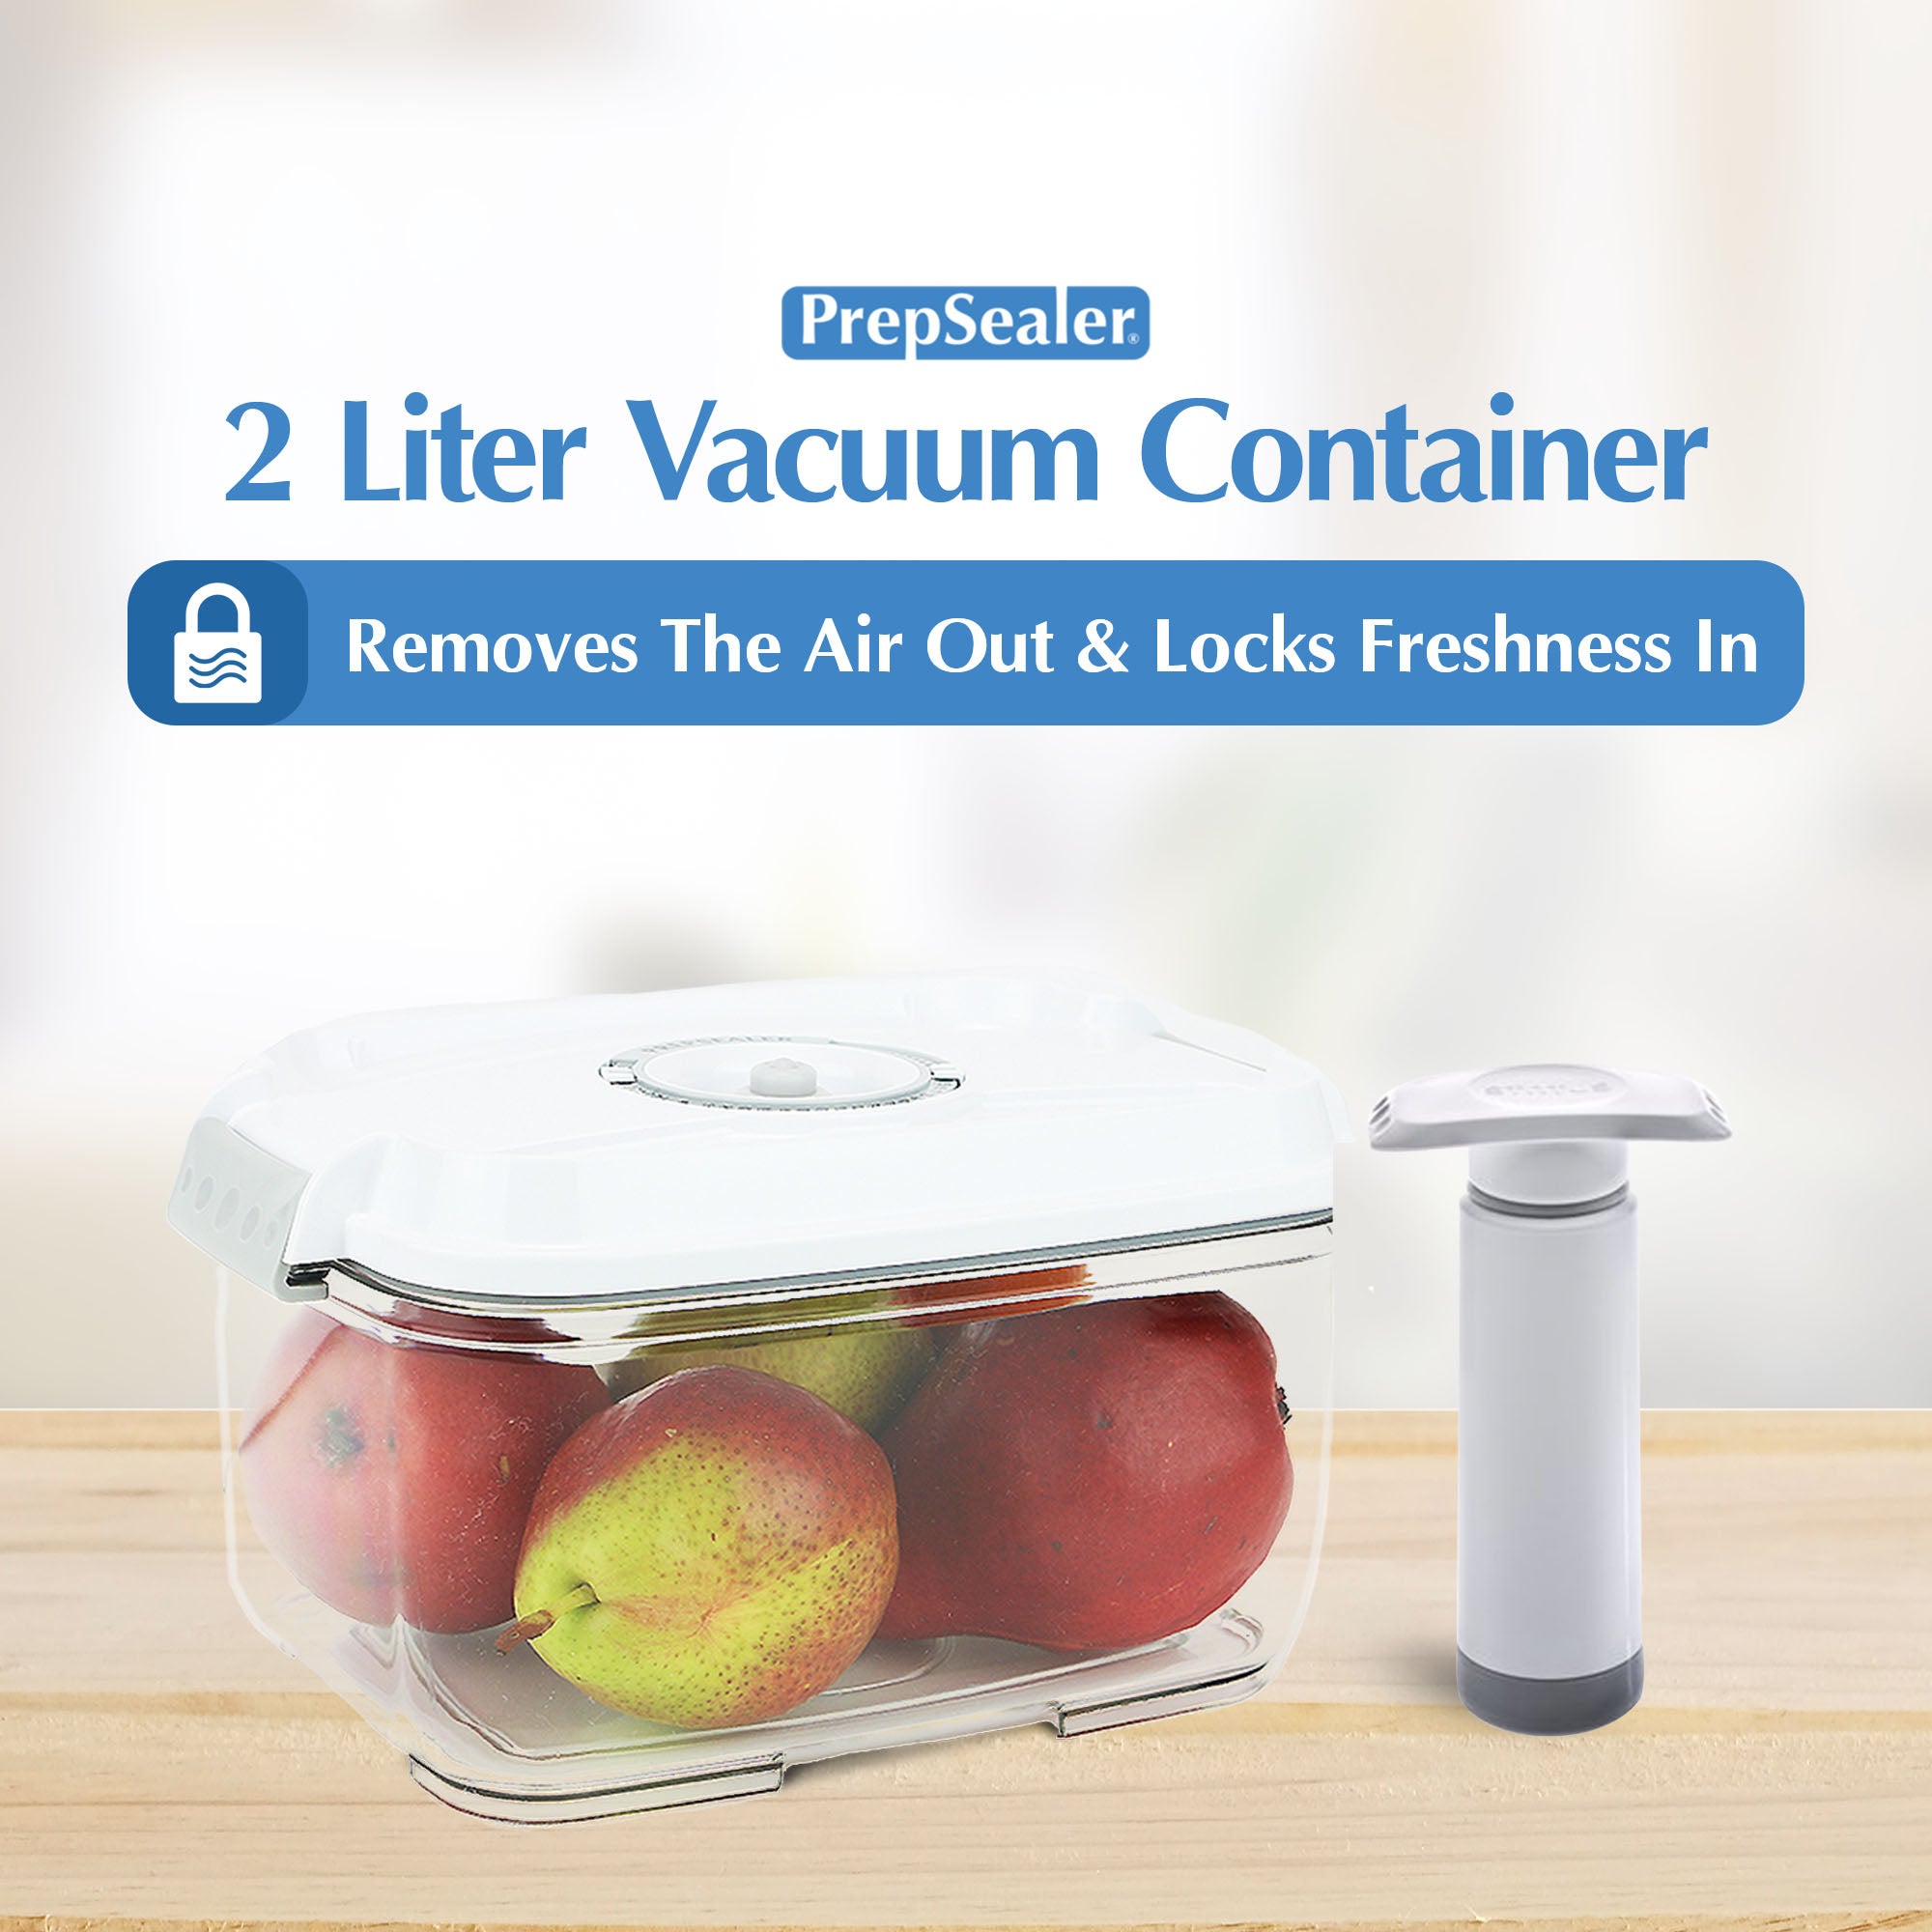 PrepSealer Glass Vacuum Container + Manual Pump